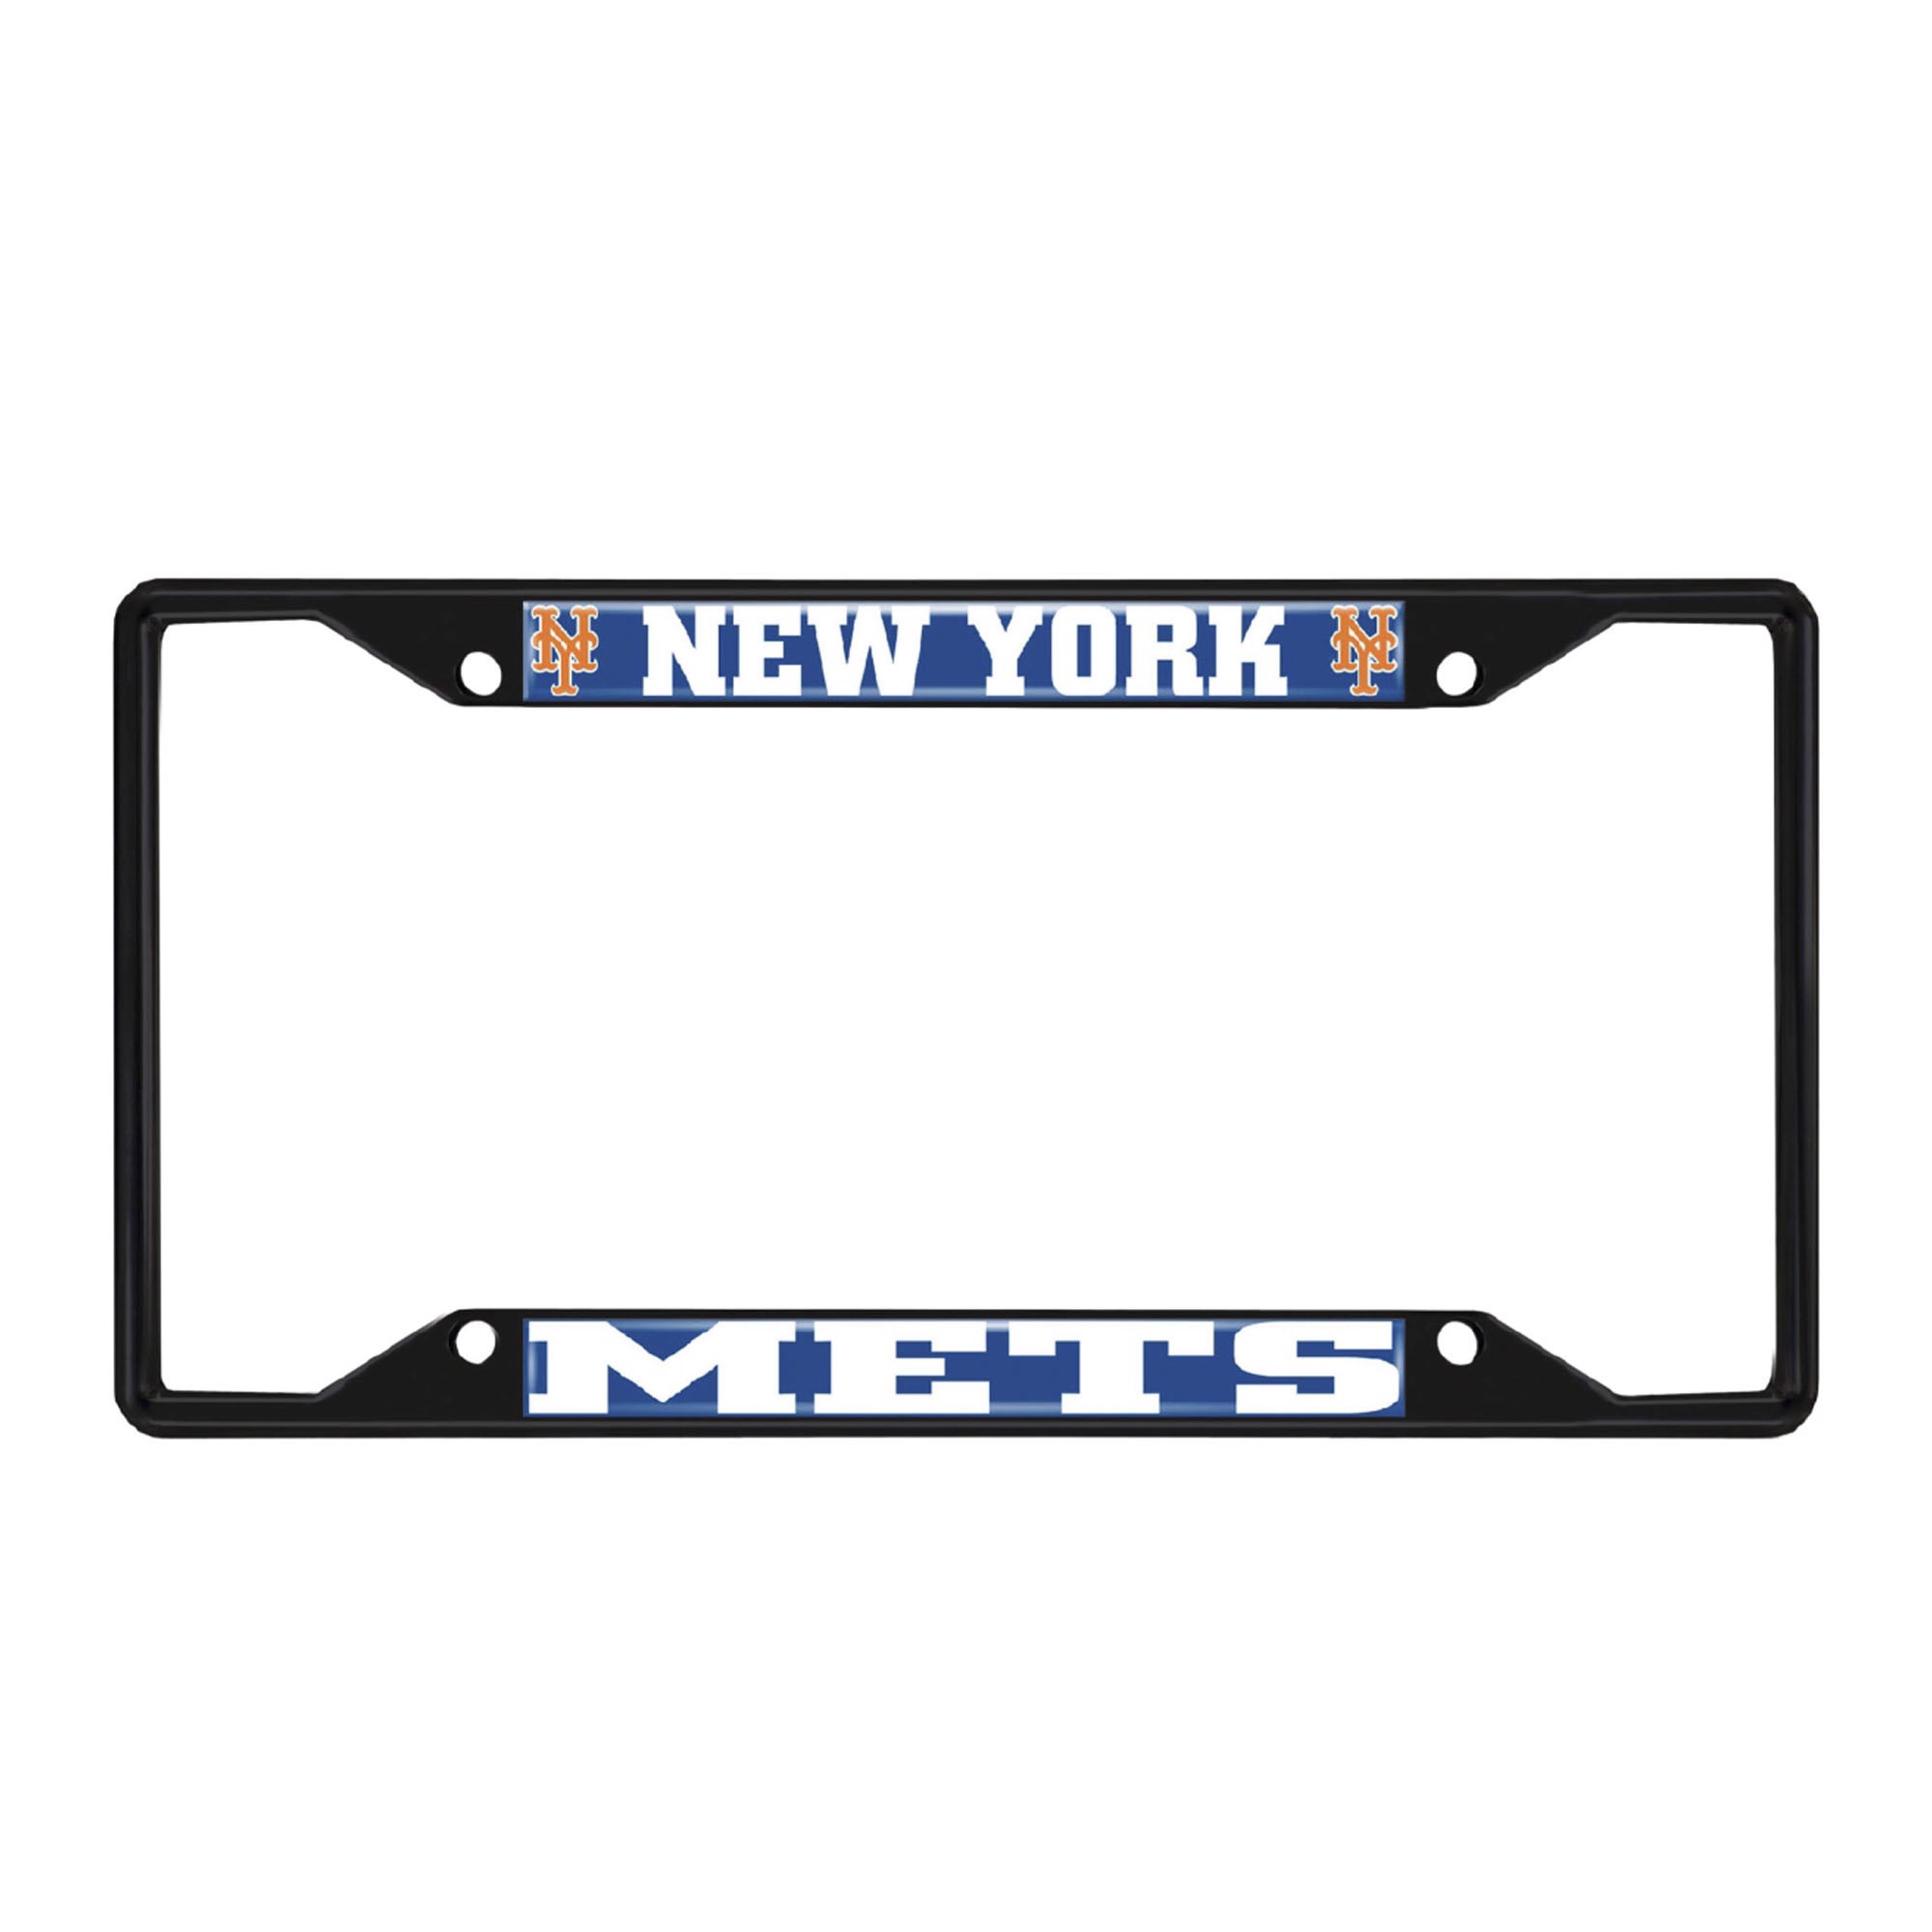 Fanmats Mlb New York Mets License Plate Frame Black